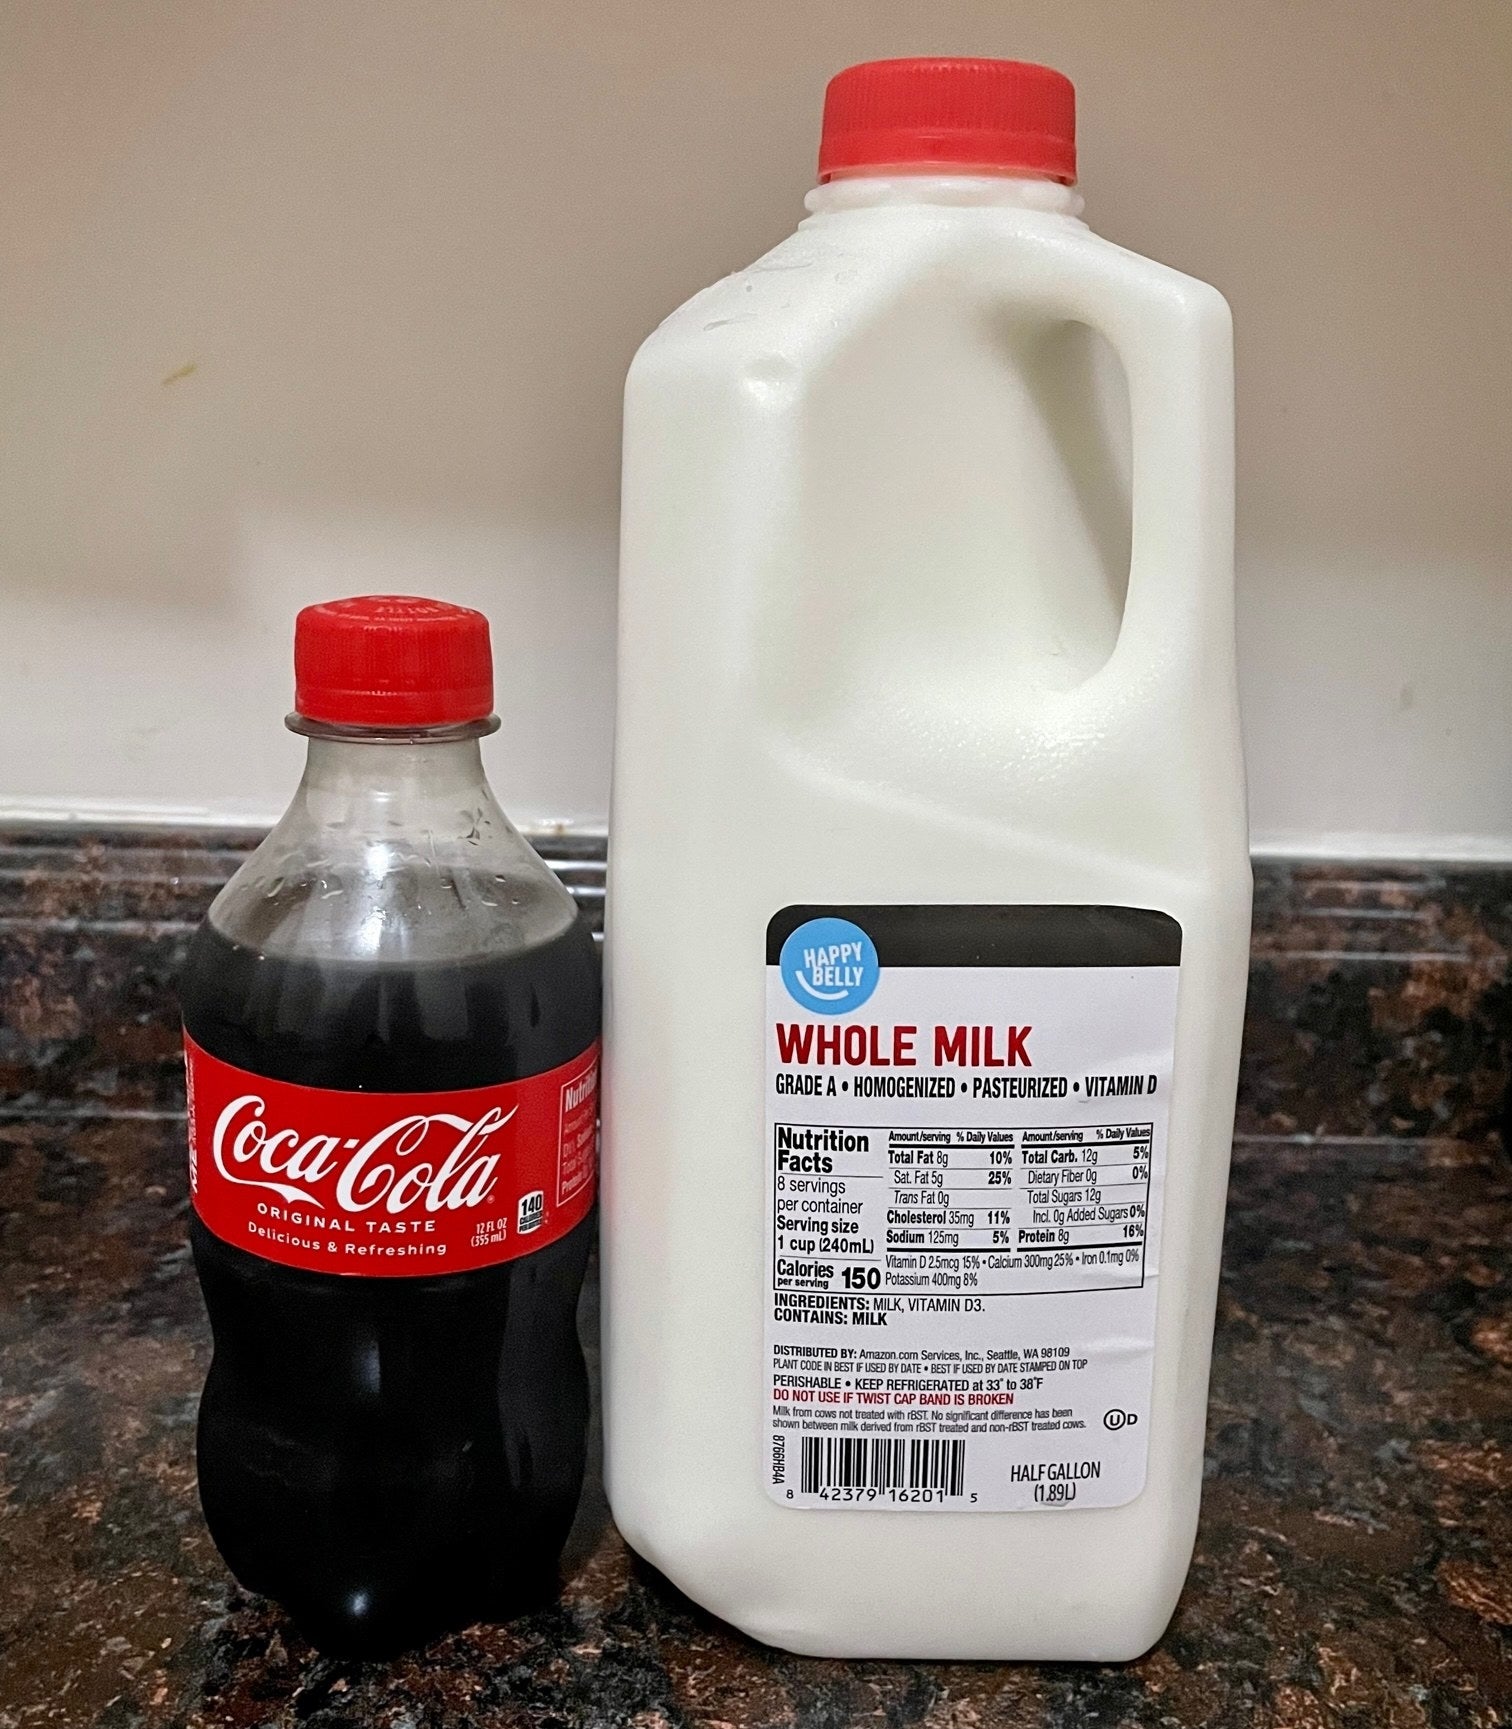 Coca Cola and whole milk